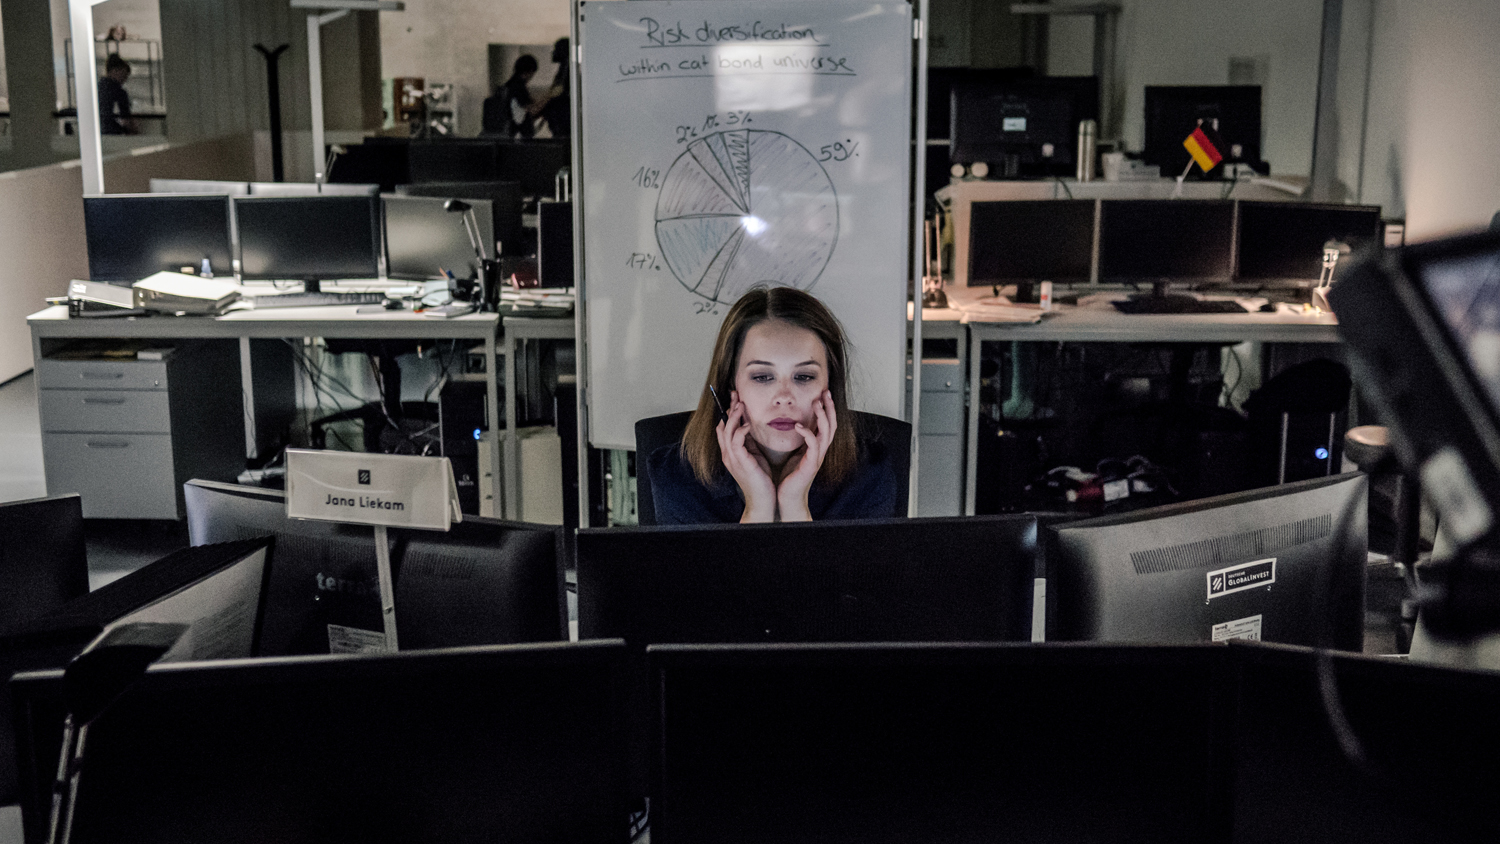 Jana Liekam (Paula Beer) sitzt an ihrem Schreibtisch hinter mehreren Bildschirmen und arbeitet. Es scheint spät zu sein, denn die anderen Arbeitsplätze im Großraumbüro sind leer.